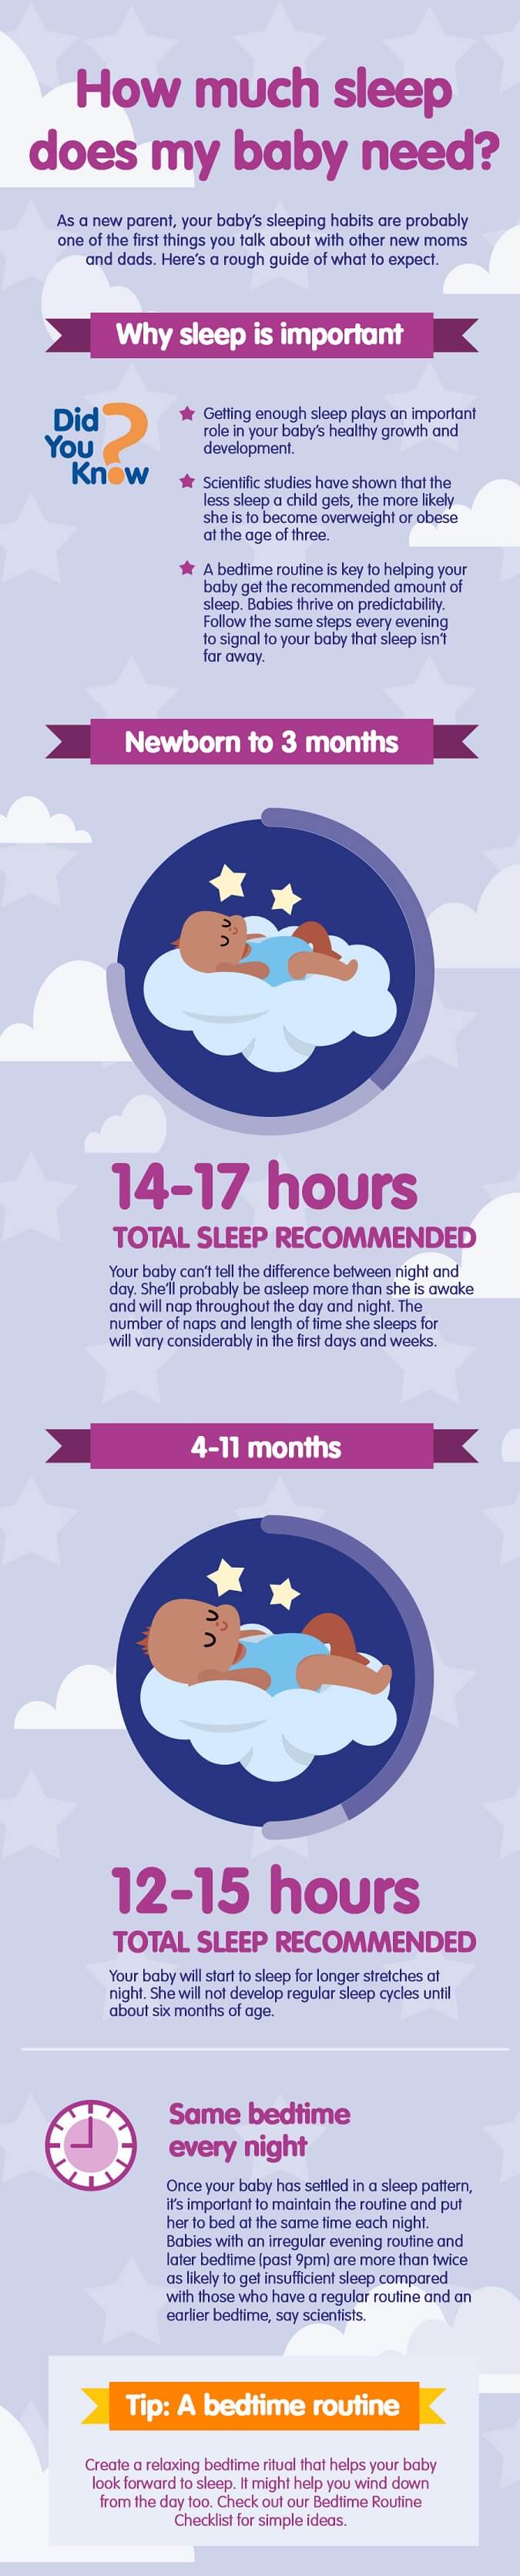 How much sleep babies need